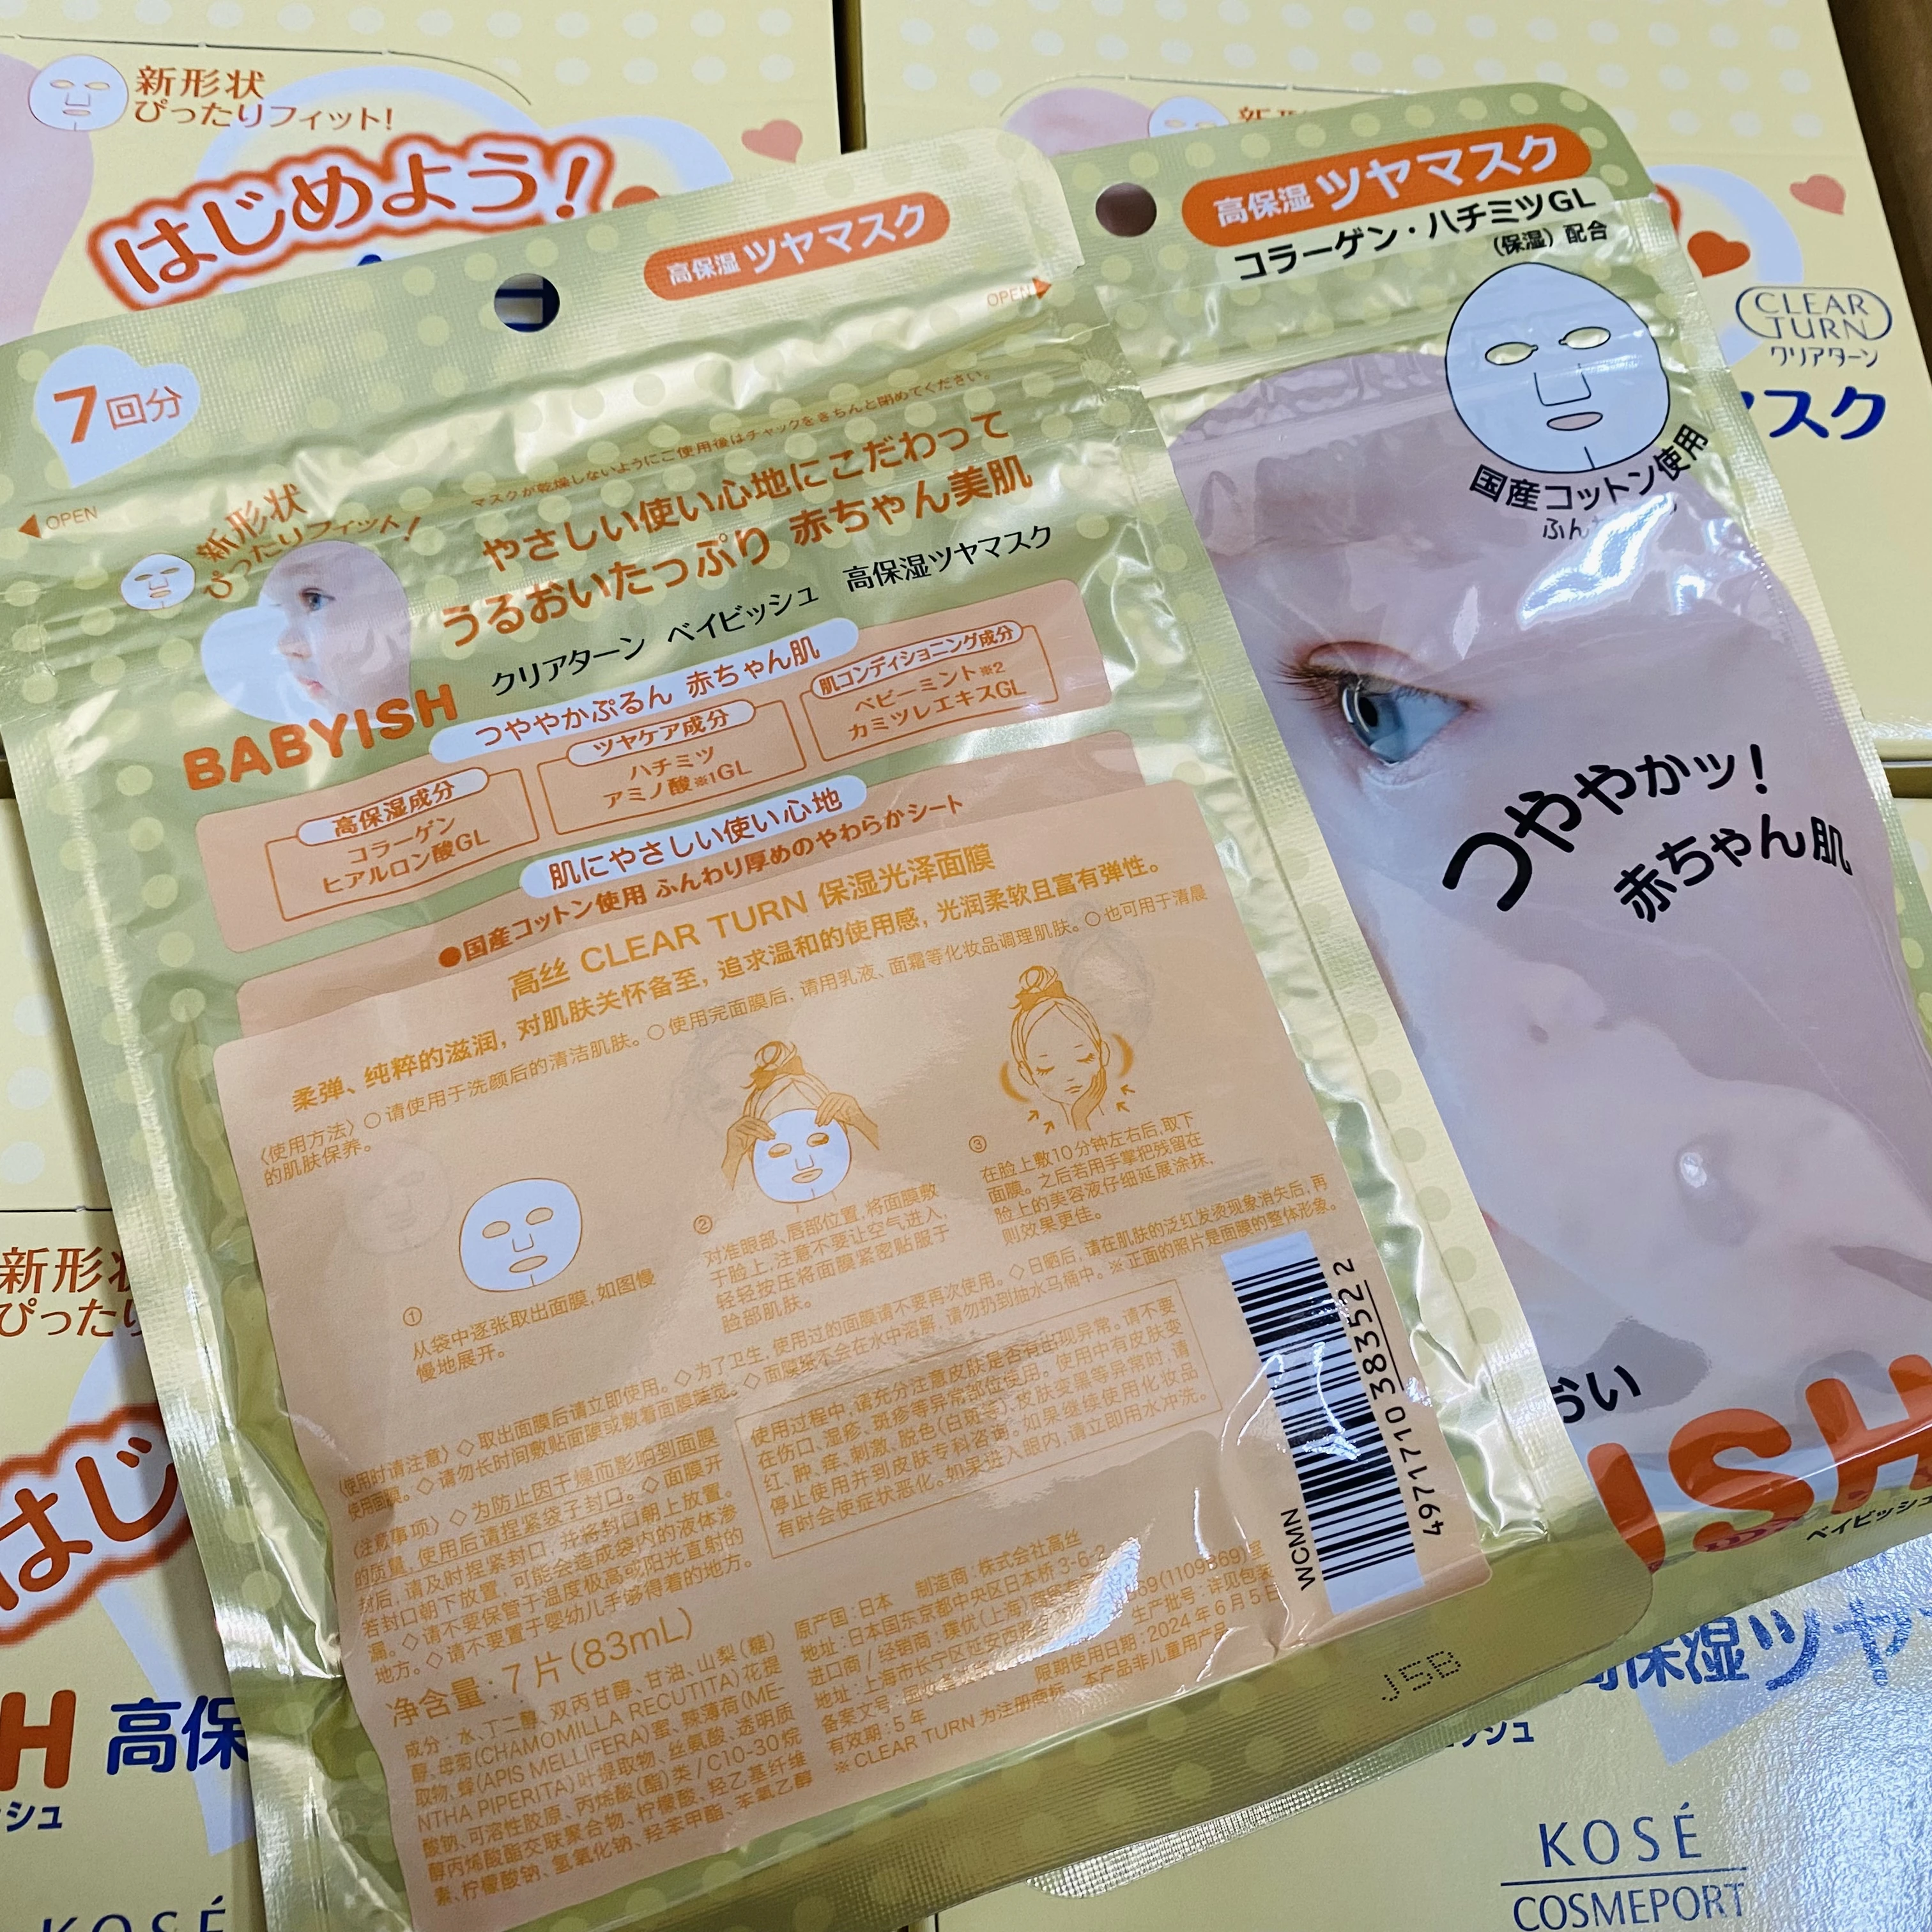 日本进口KOSE高丝美肌Babyish保湿面膜7片装 婴儿面膜药妆滋润亮肤型 商品